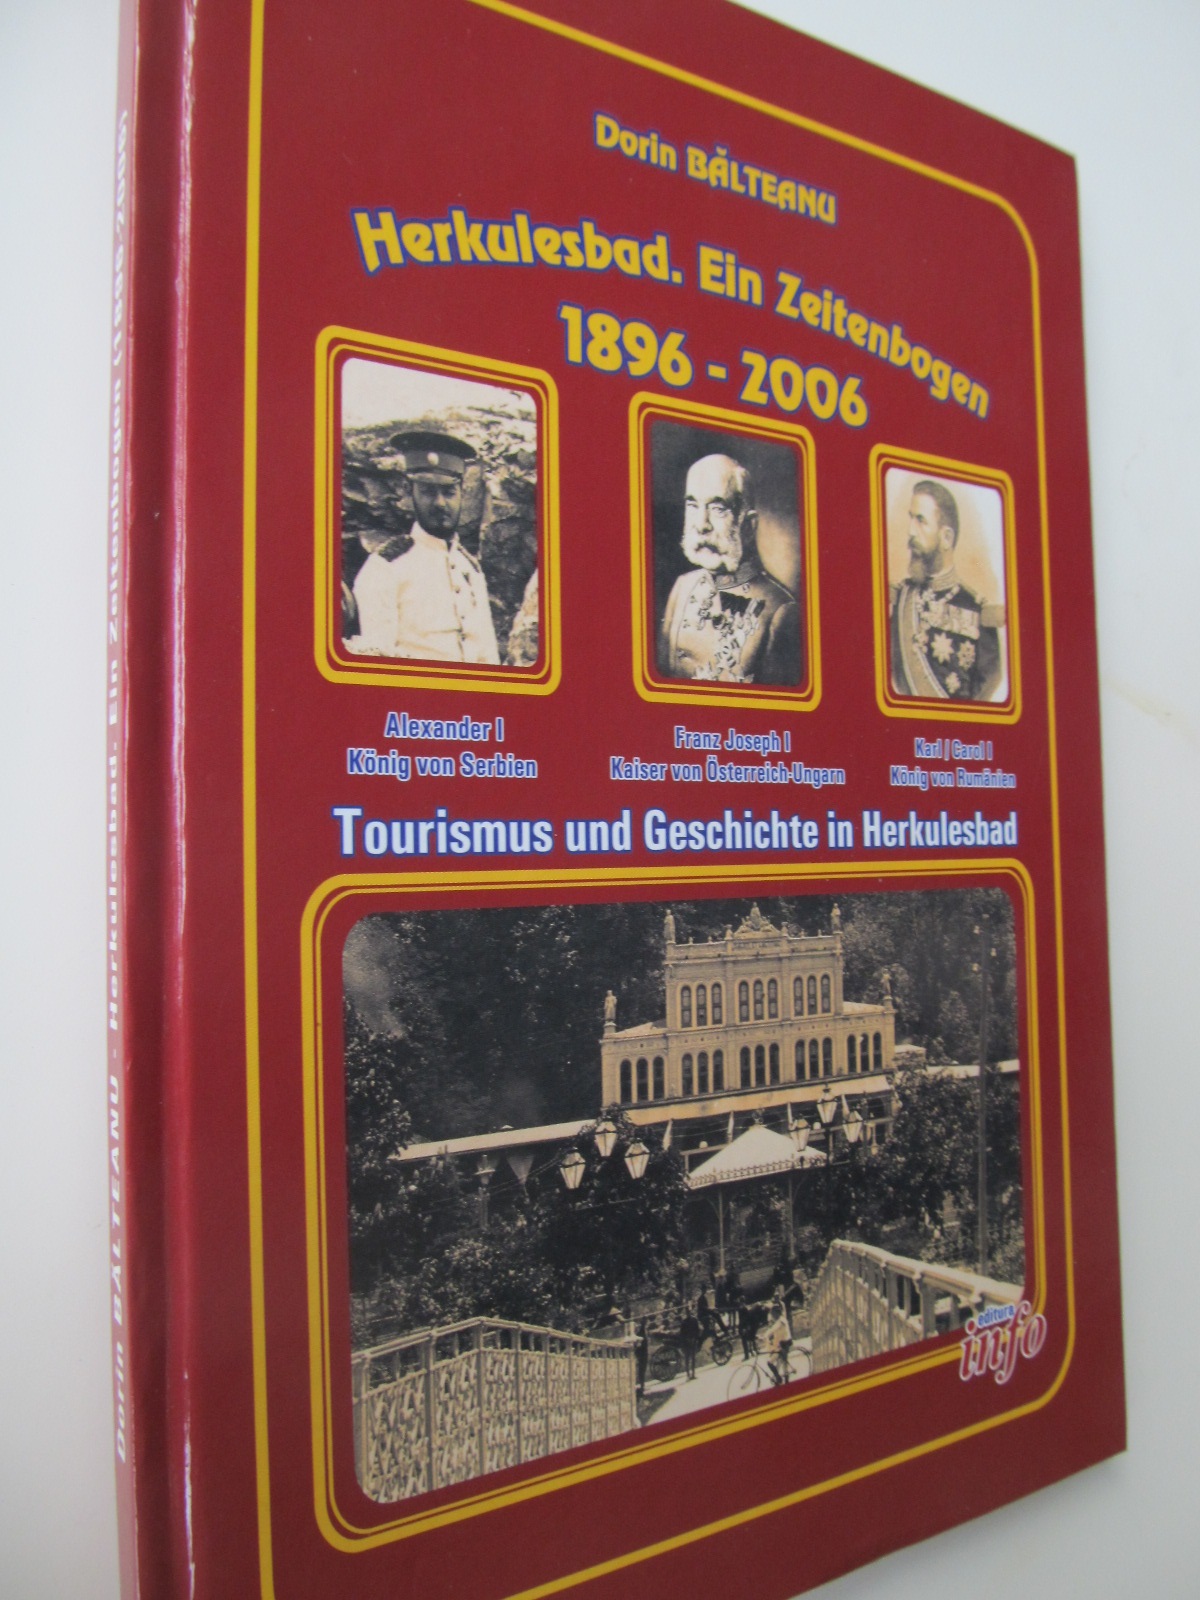 Herkulesbad, Ein Zeittenbogen 1896 - 2006 (cu semnatura autorului) - Dorin Balteanu | Detalii carte